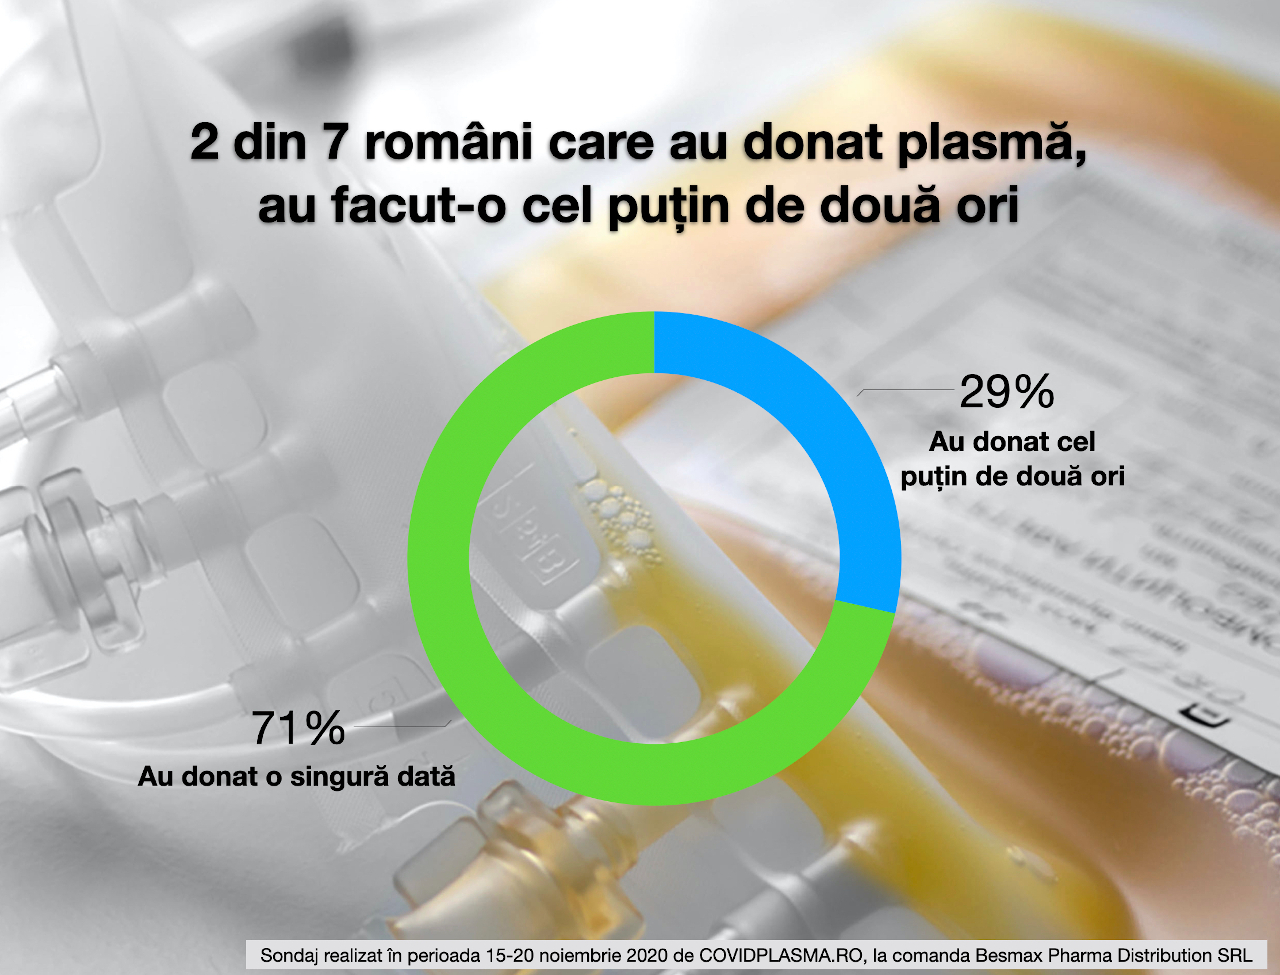 Portalul COVIDPLASMA.RO a efectuat primul sondaj privind donarea de plasmă convalescentă în România